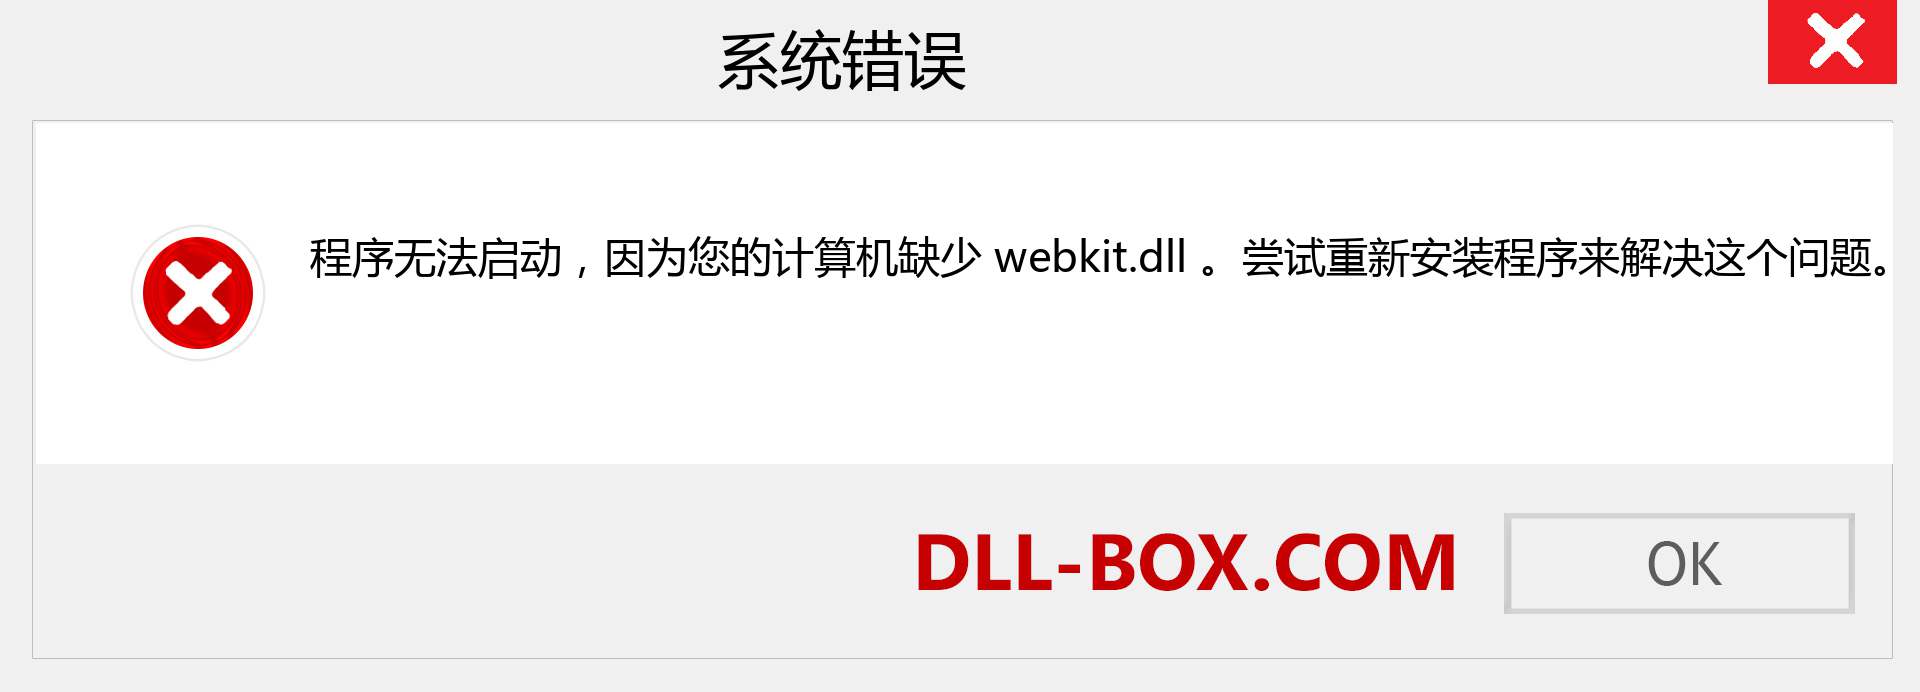 webkit.dll 文件丢失？。 适用于 Windows 7、8、10 的下载 - 修复 Windows、照片、图像上的 webkit dll 丢失错误